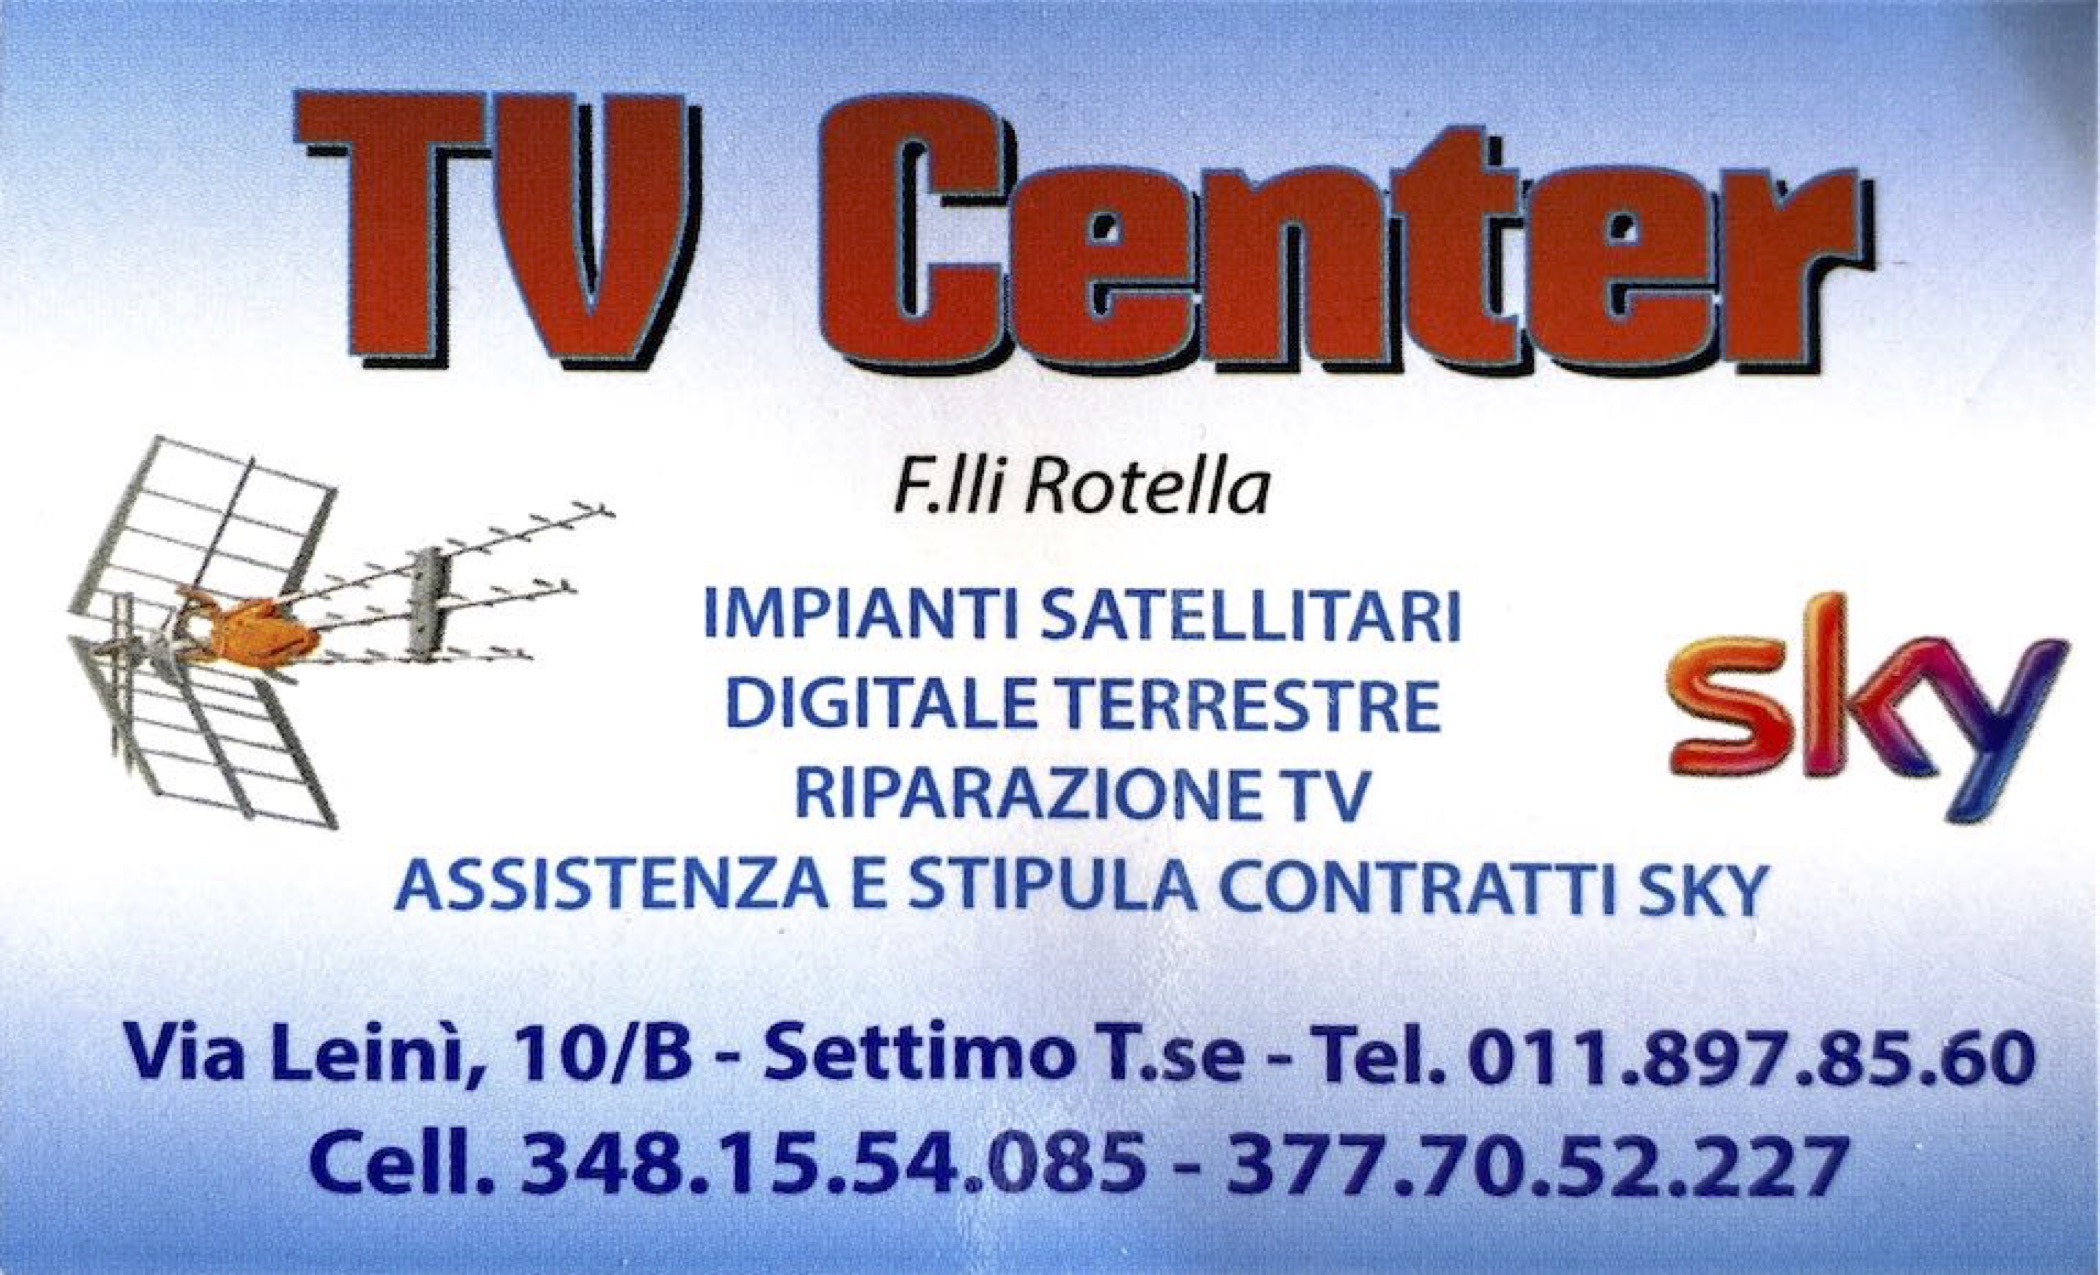 TV Center